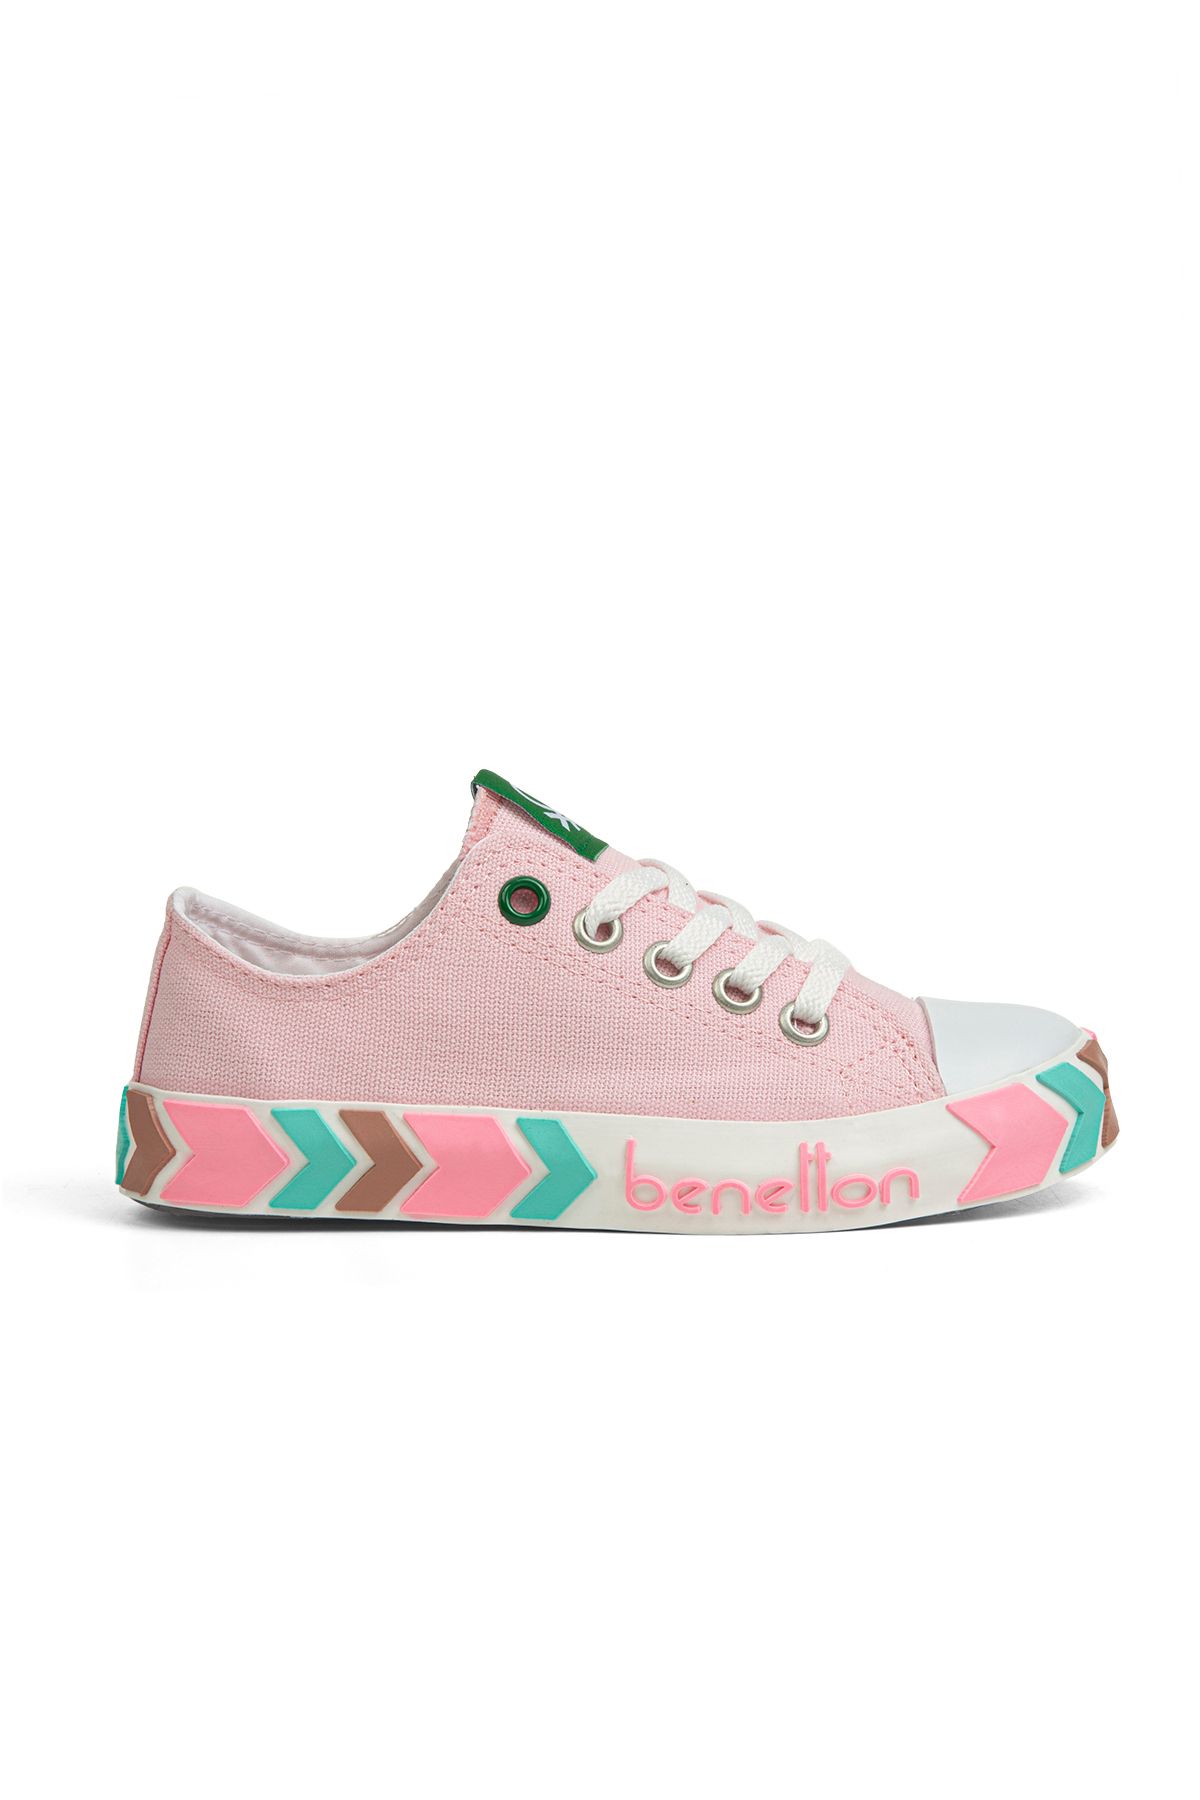 Benetton Pembe Kız Çocuk Yürüyüş Ayakkabısı BN-30633 96-Pembe